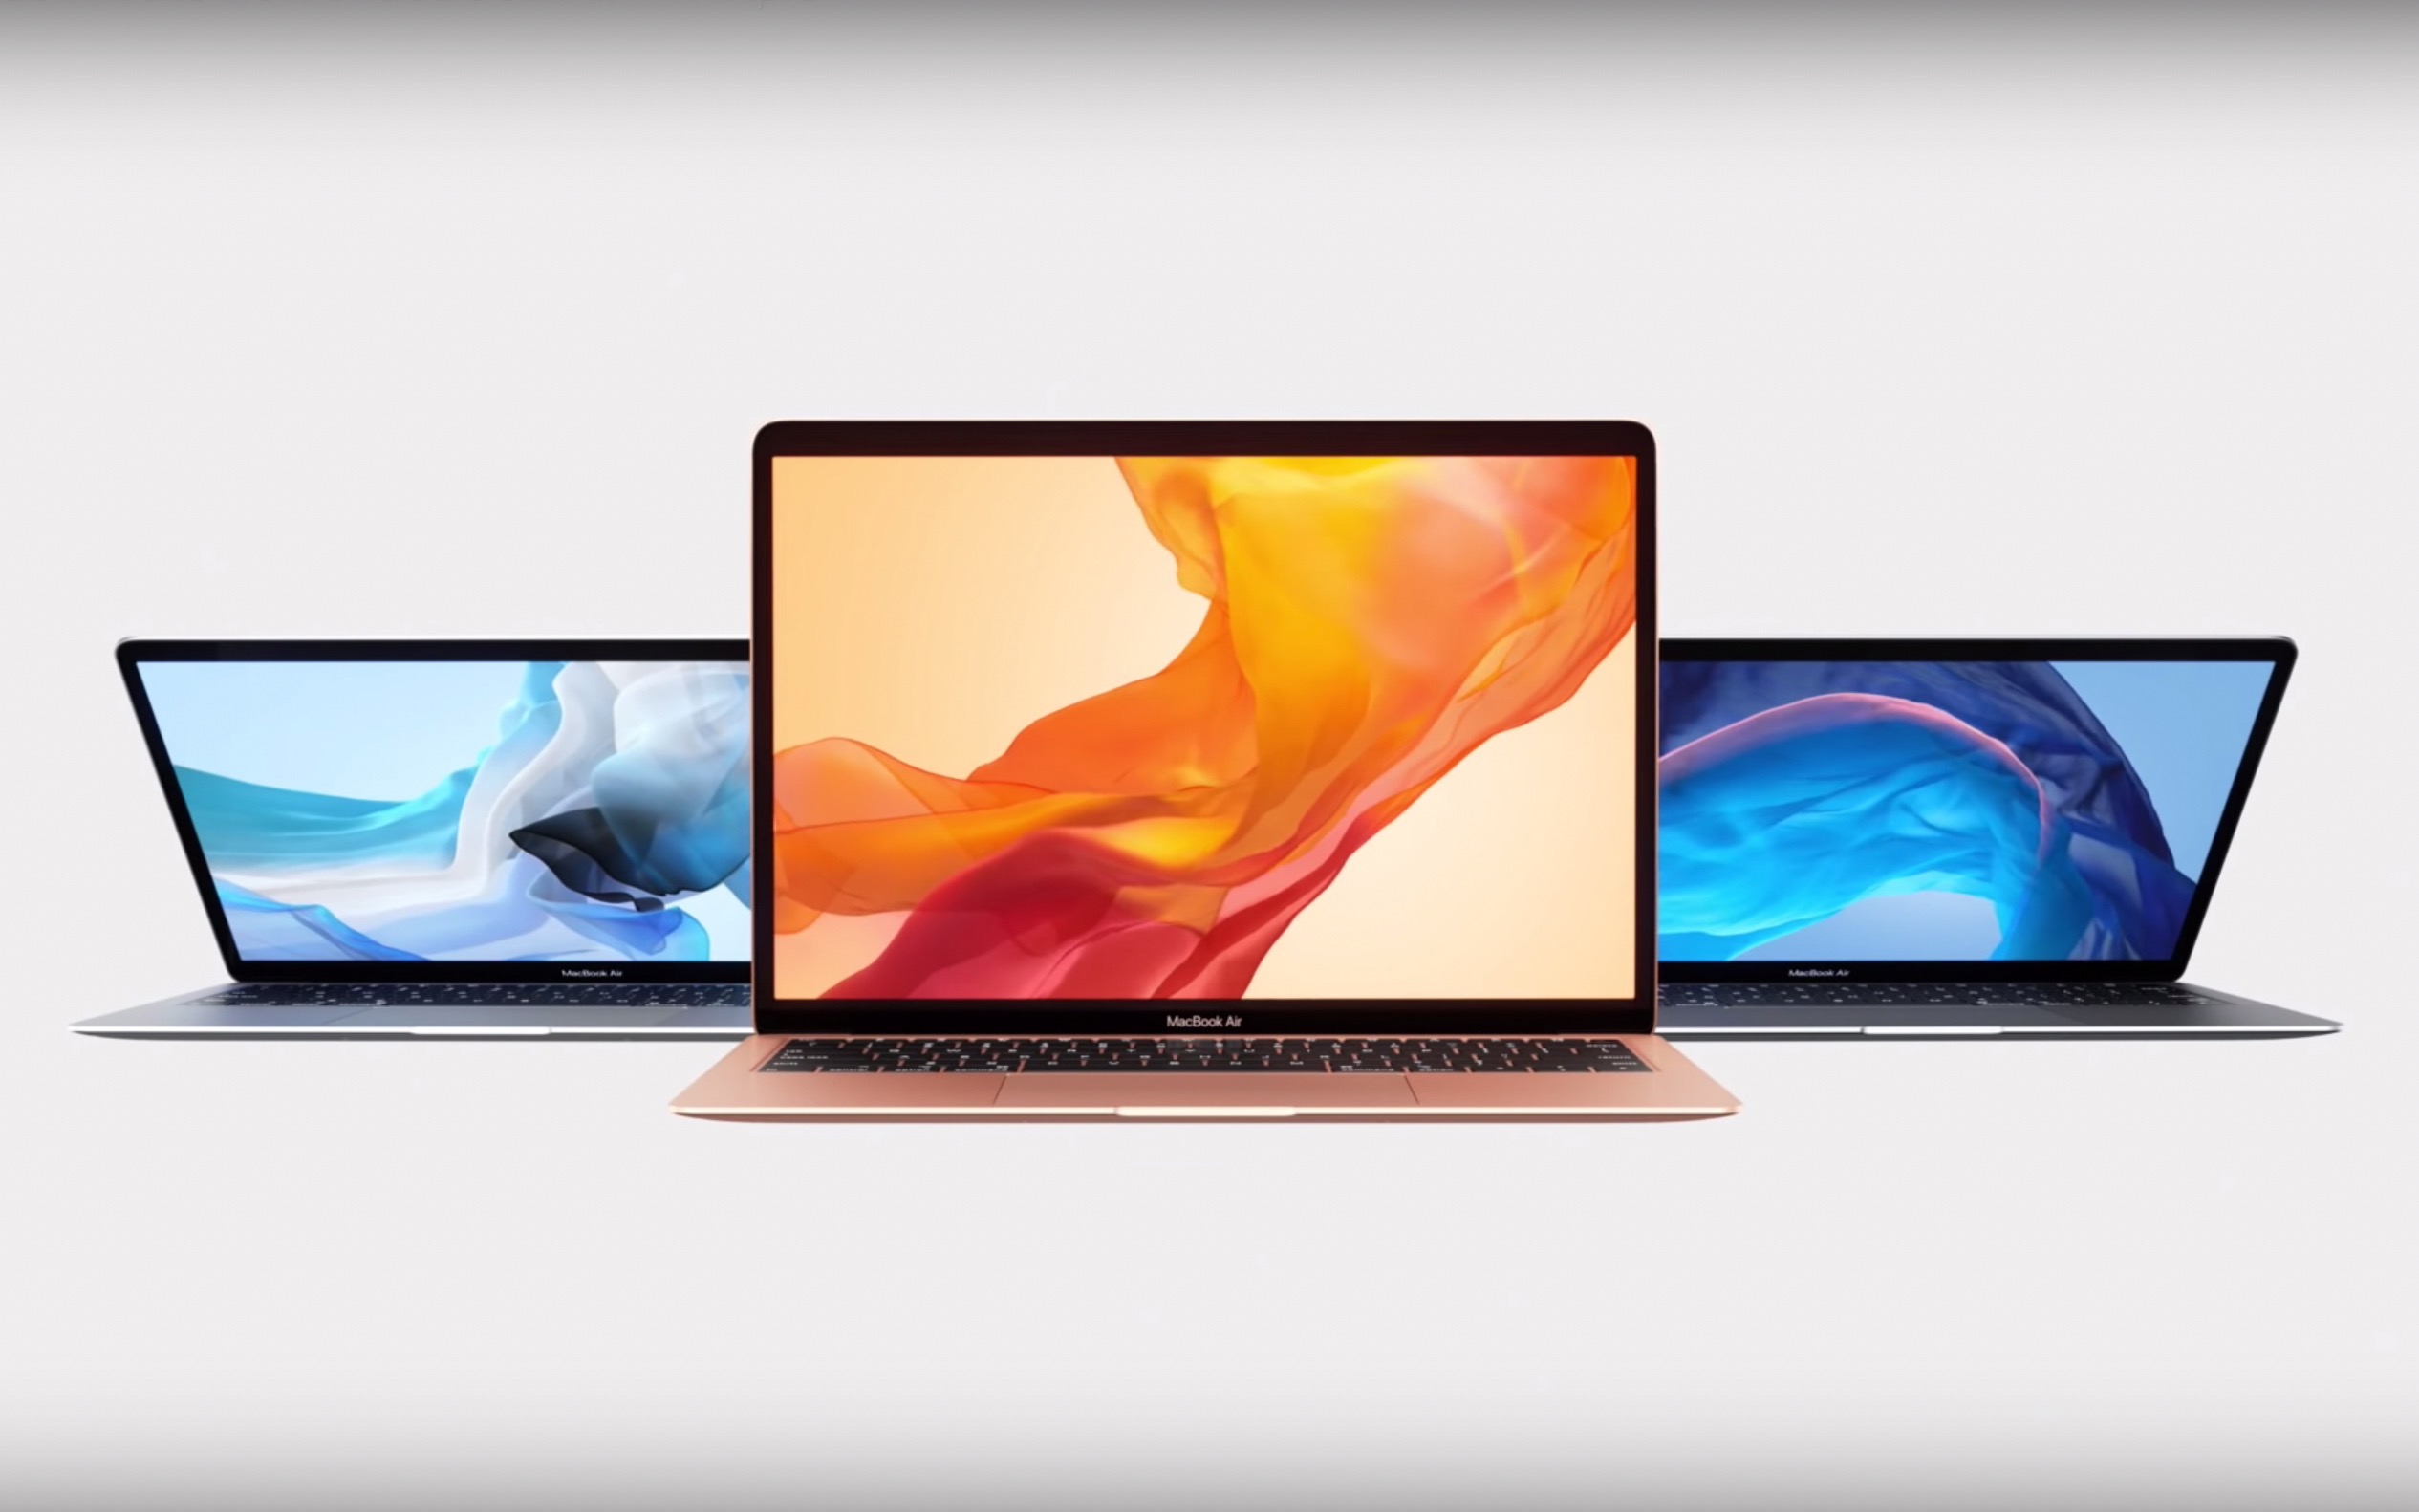 ついにMacBook Air が刷新!! Apple 秋のイベントで発表さたもの